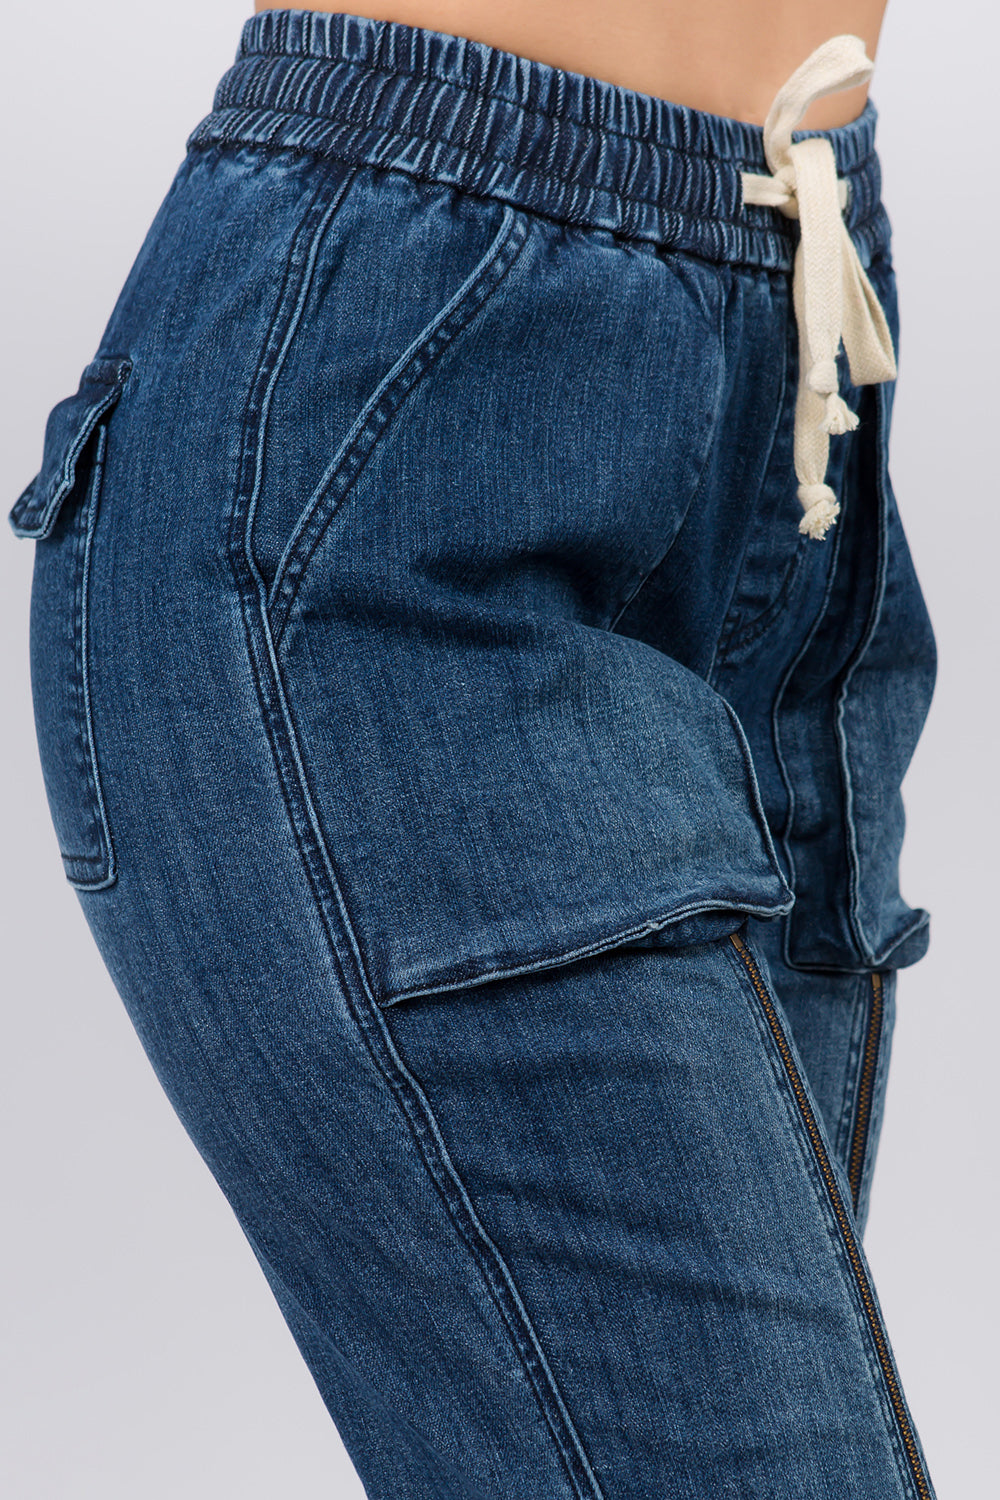 High Waist Jogger Style Jeans w/ Zipper